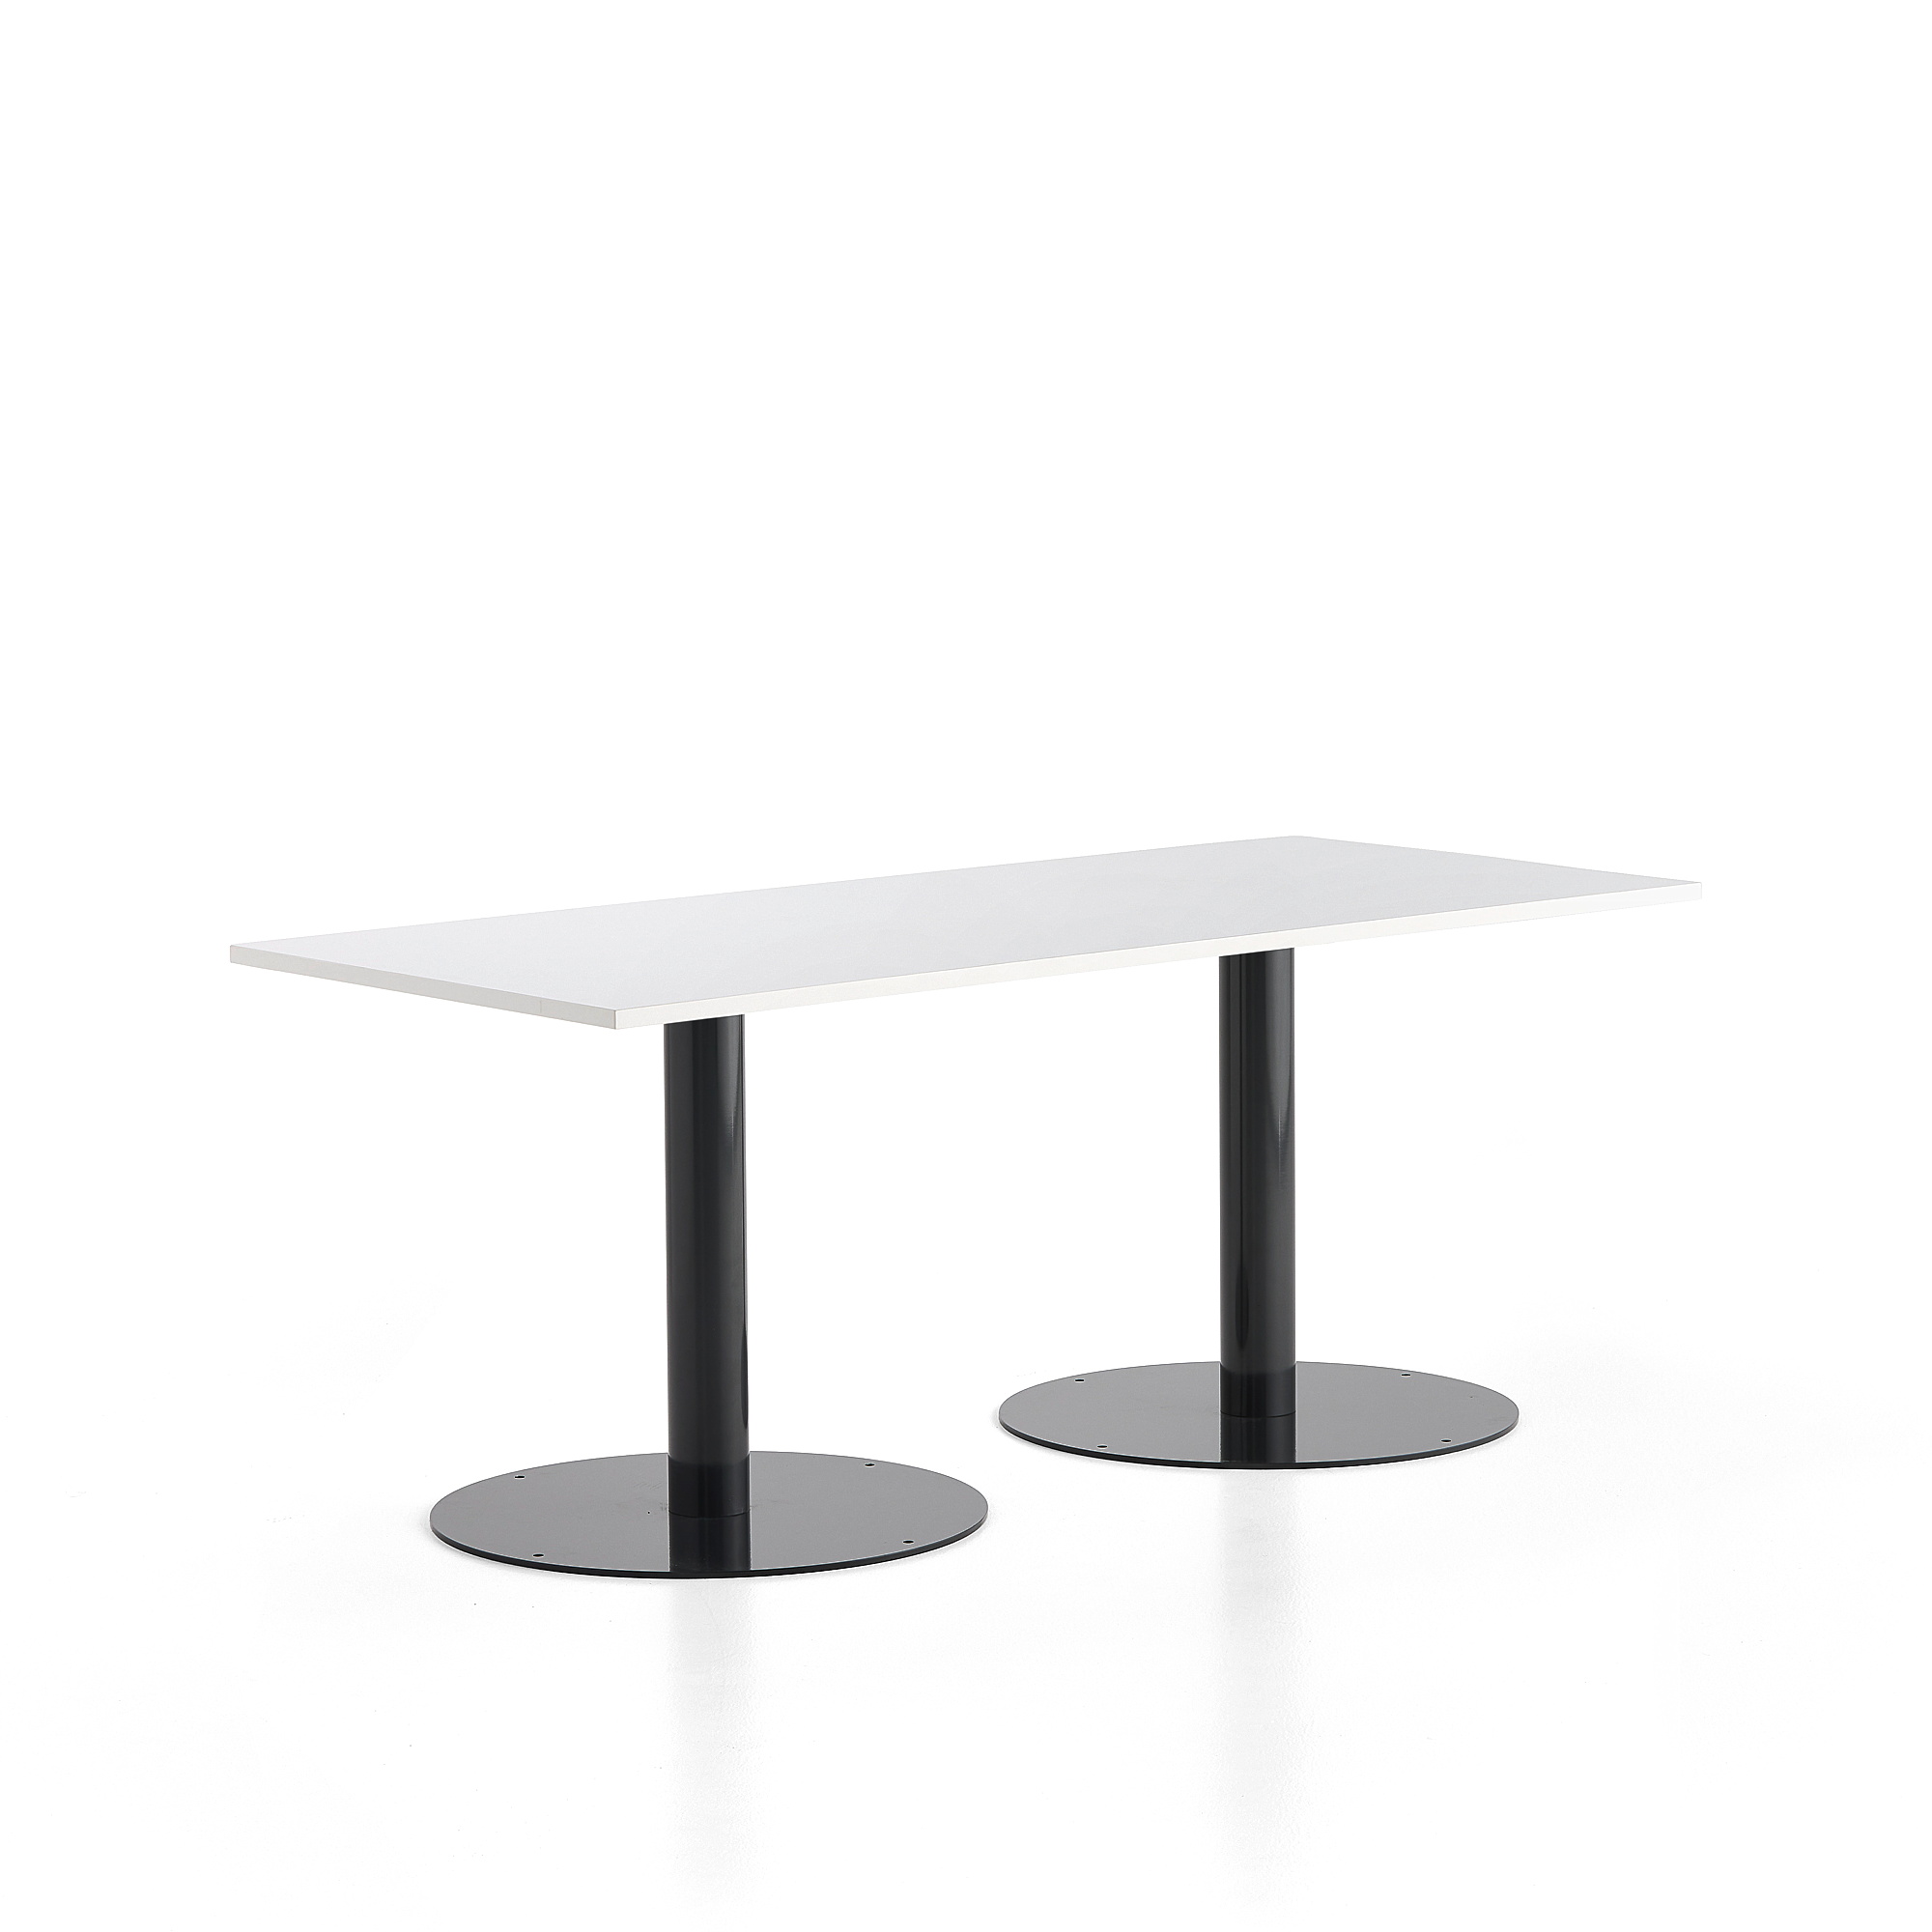 Stůl ALVA, 1800x800x720 mm, antracitová, bílá